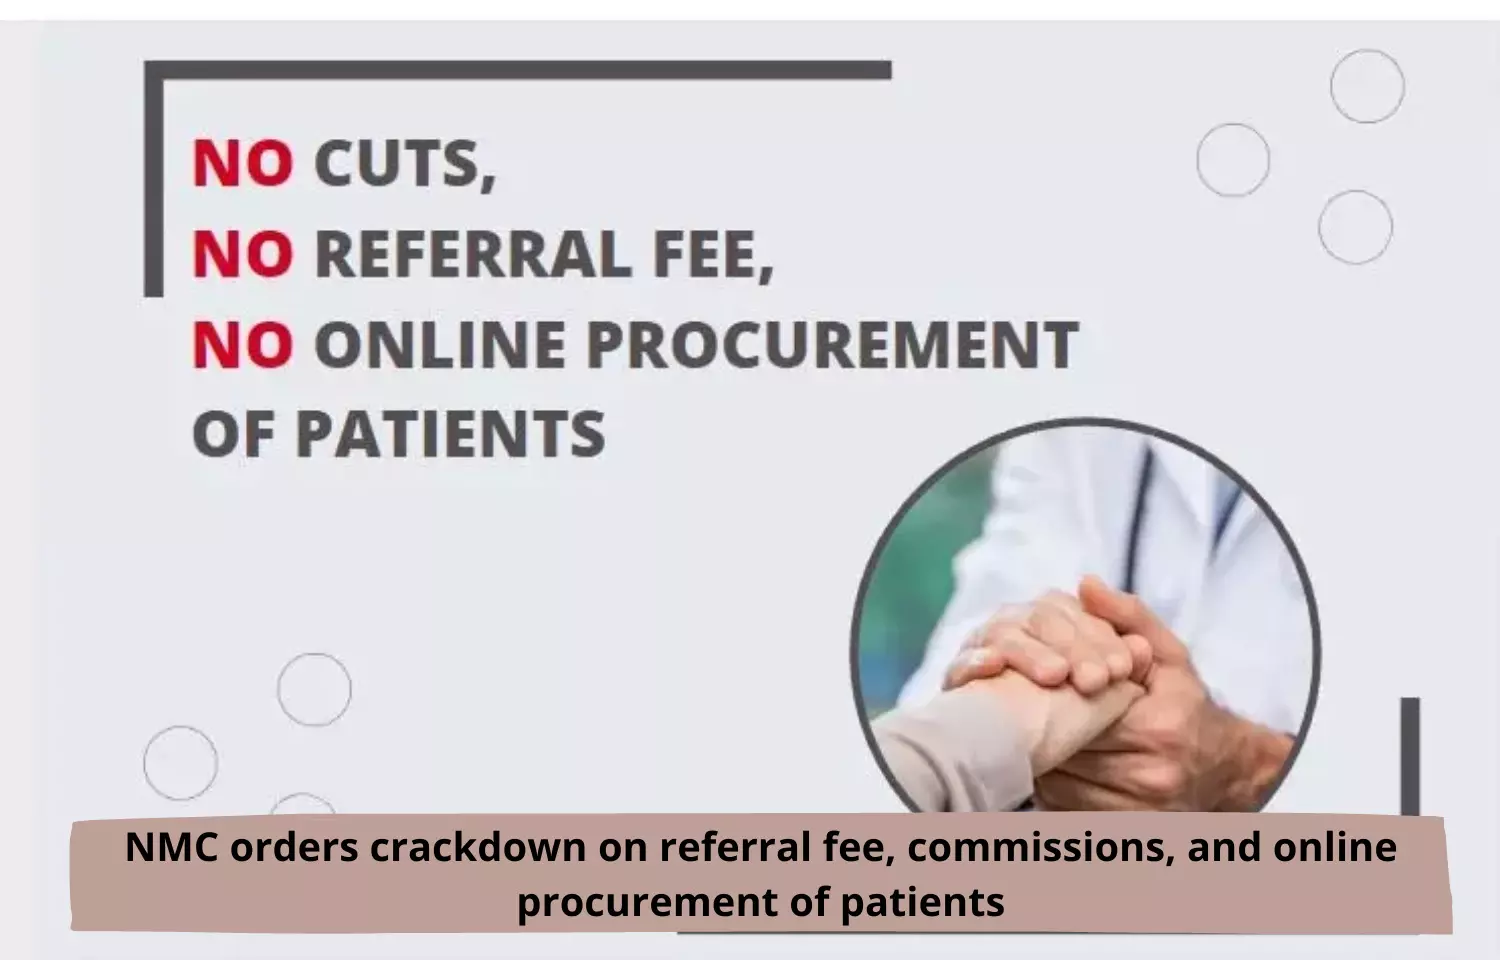 NMC orders crackdown on online procurement of patients